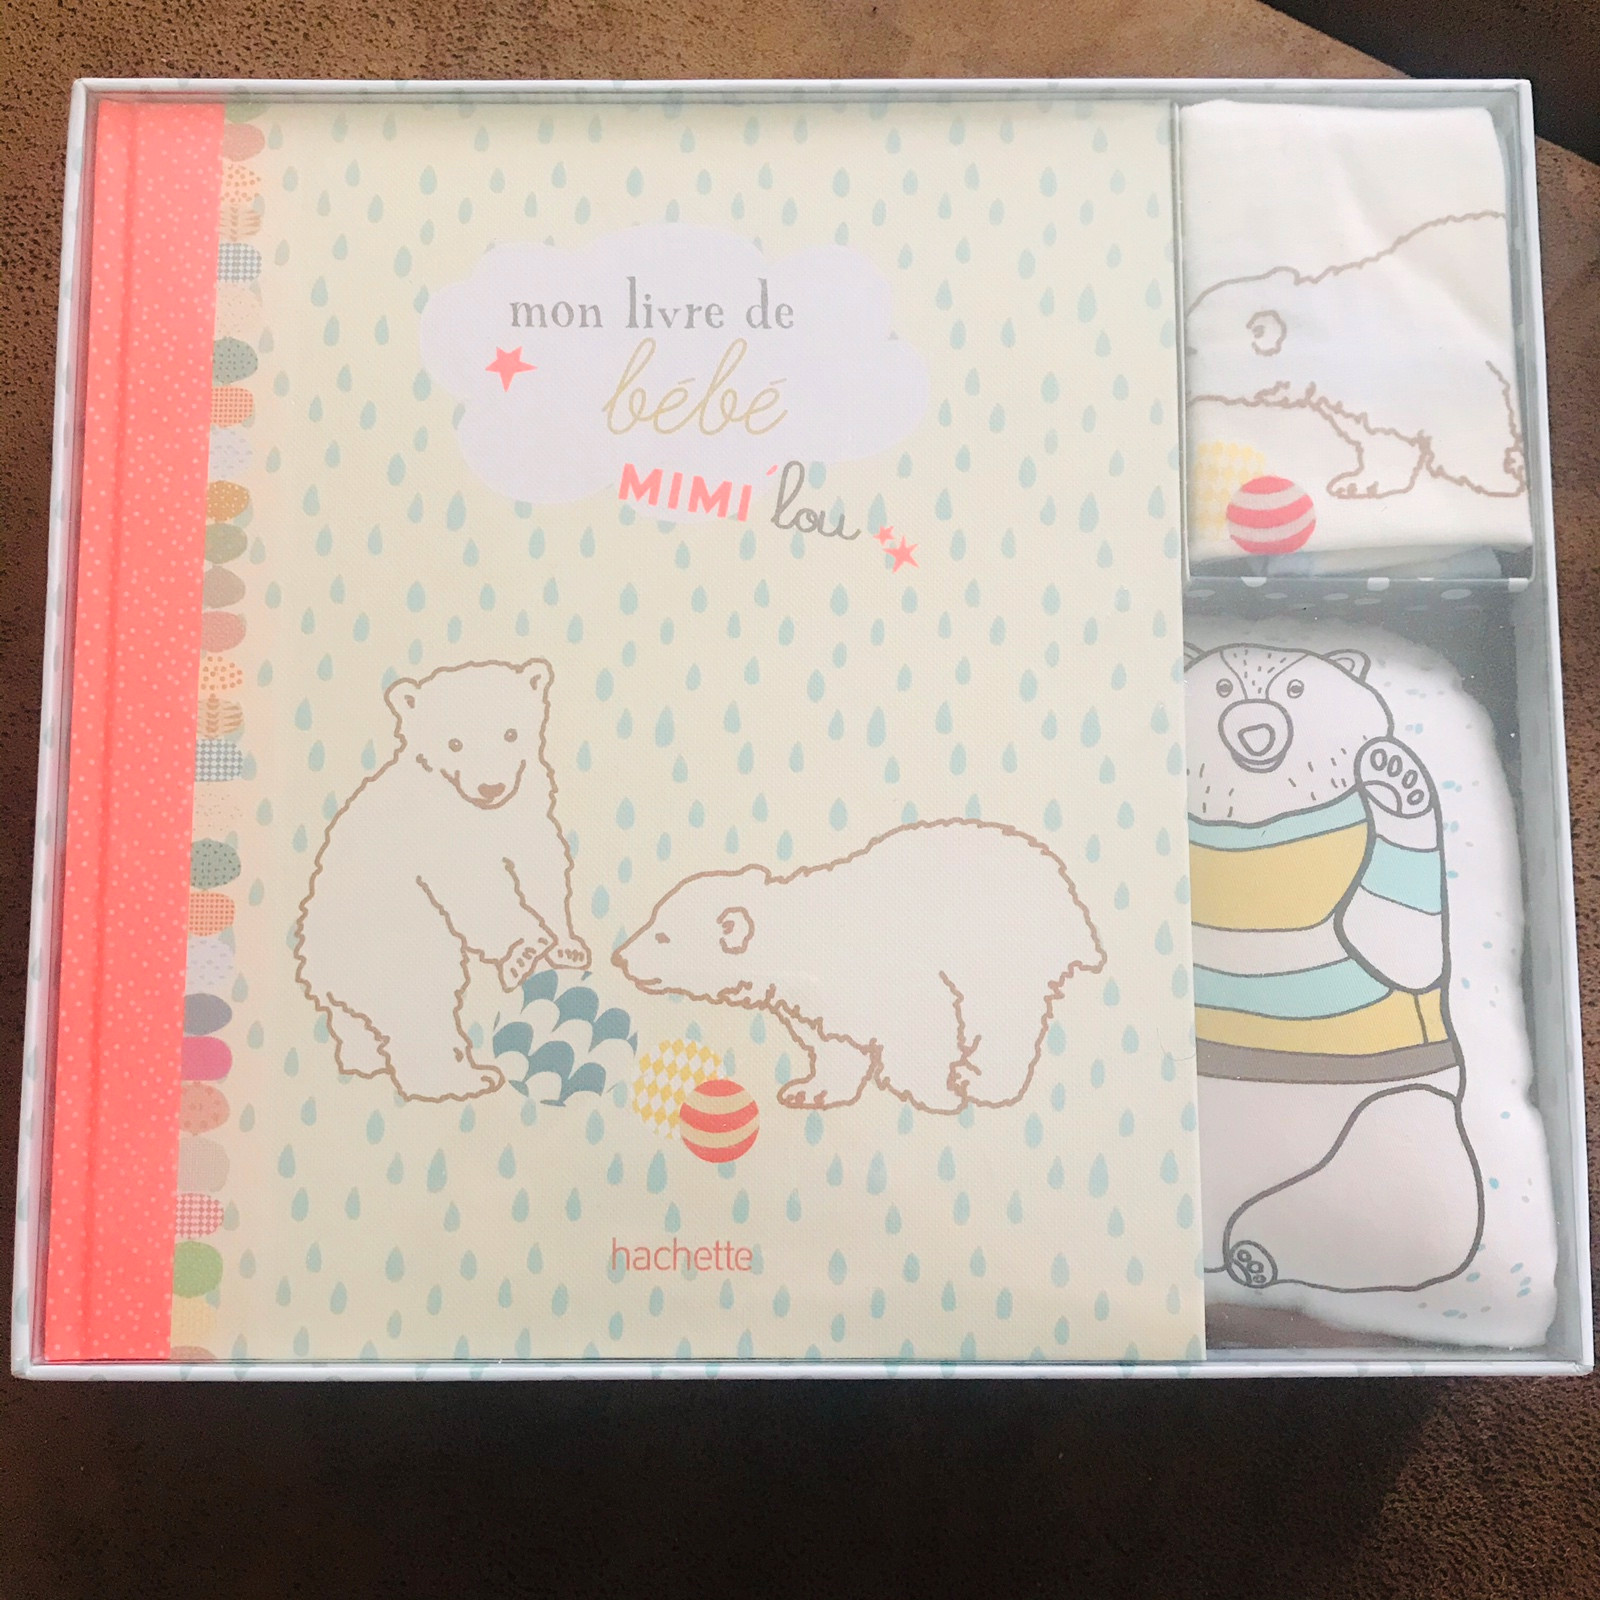 Mon livre de bébé - Mimi'lou Shop